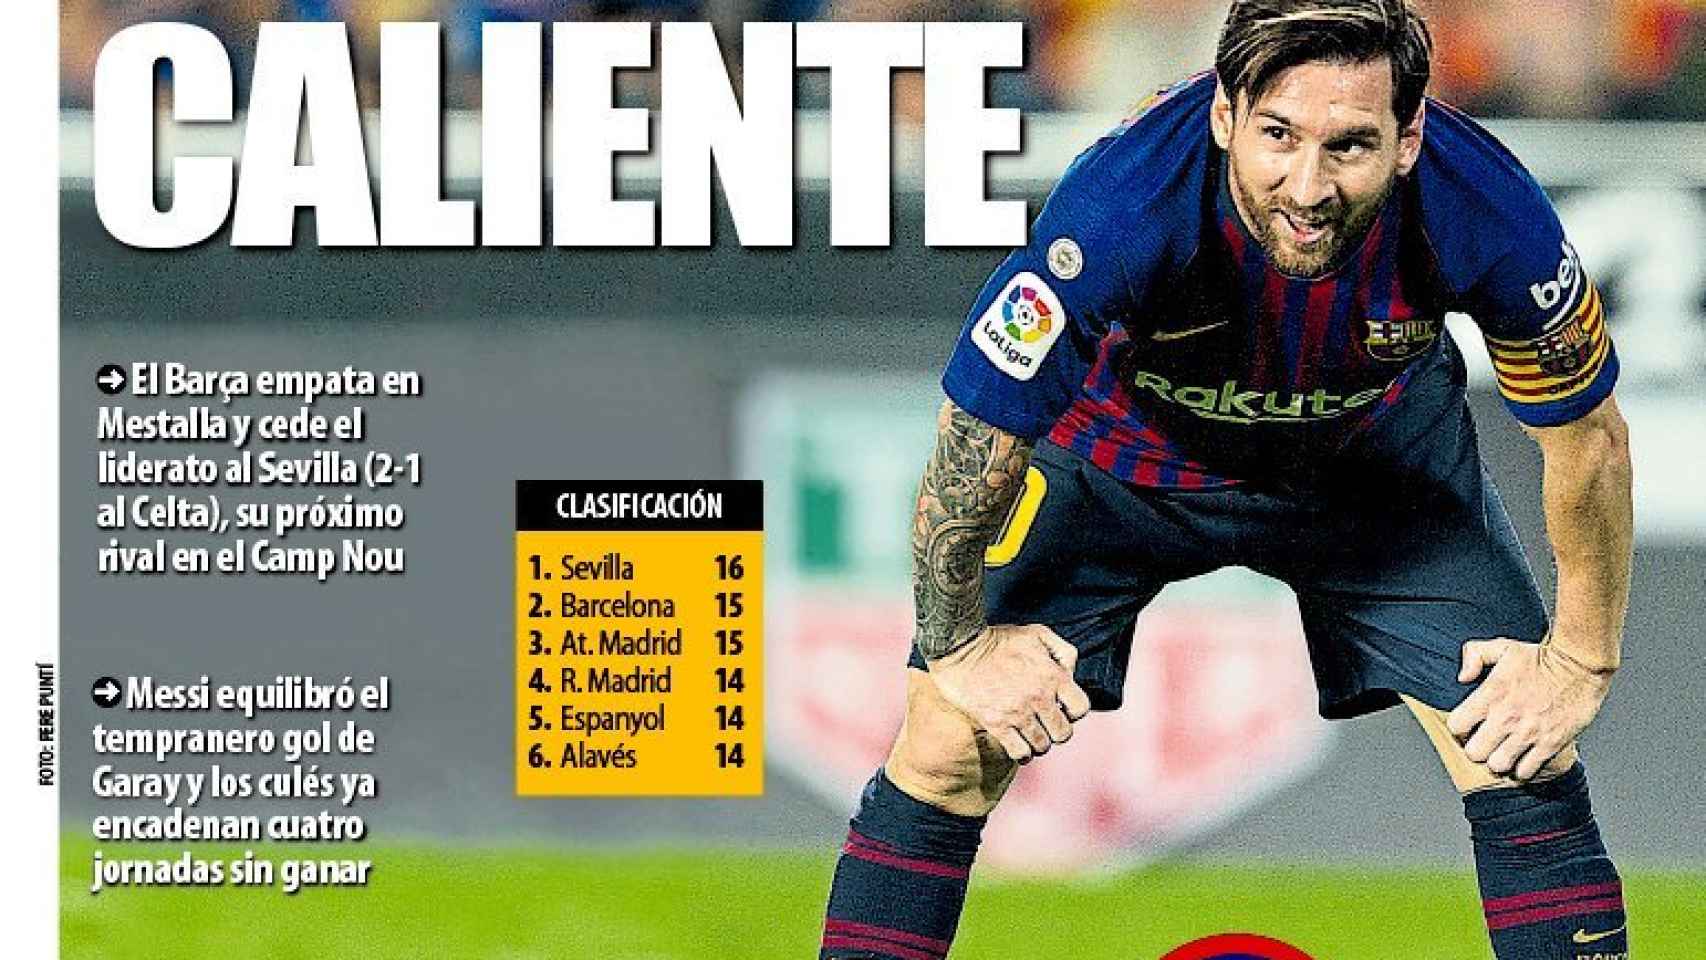 La portada del diario Mundo Deportivo (08/10/2018)